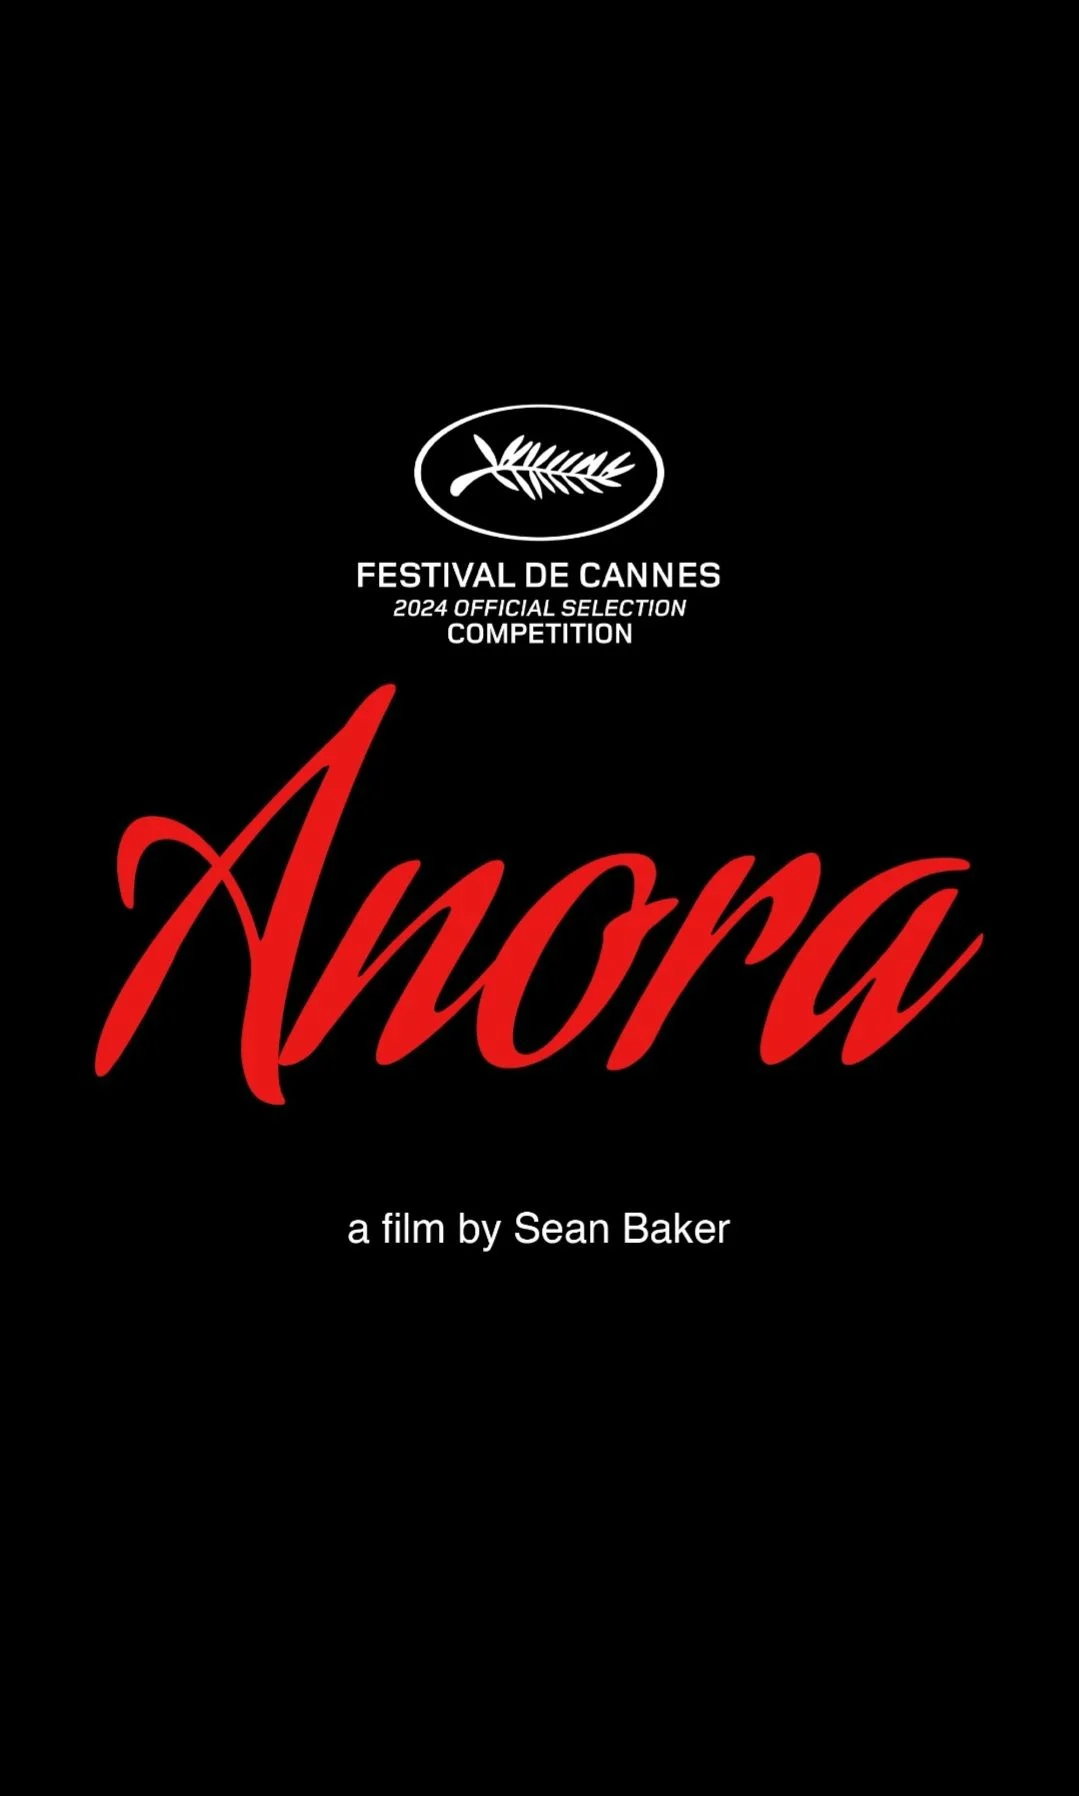 La locandina ufficiale del nuovo film di Sean Baker presentato a Cannes77, Anora